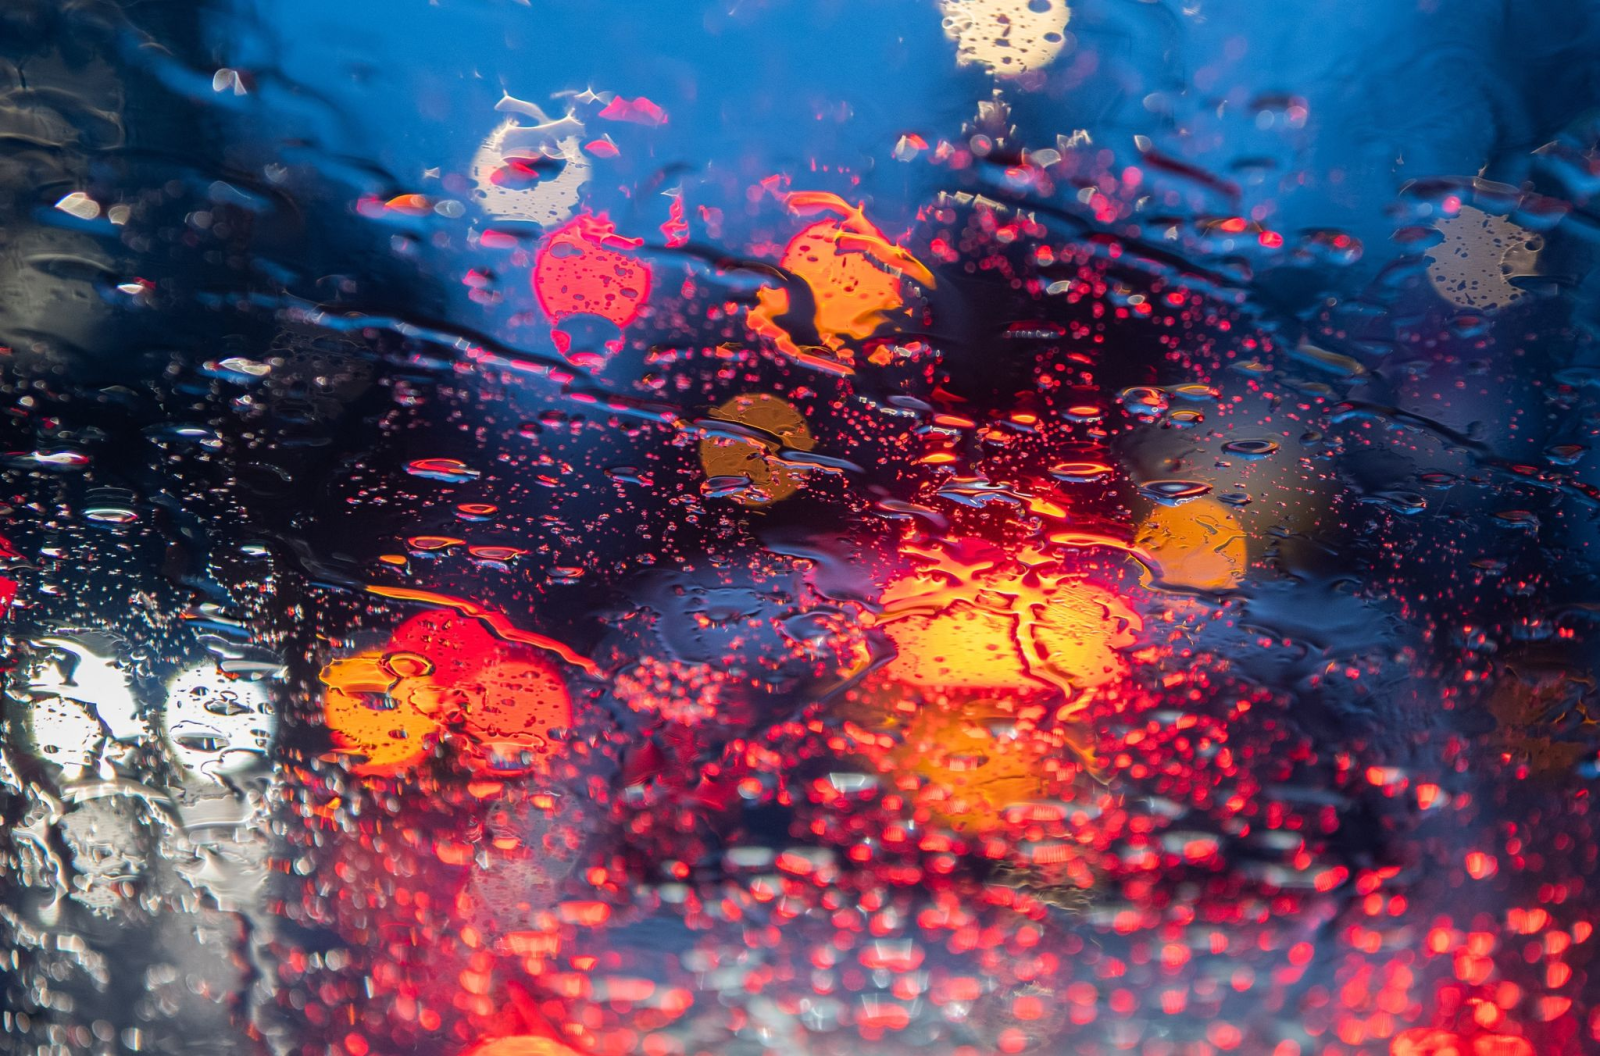 Regentropfen sind auf einer Autoscheibe zu sehen.